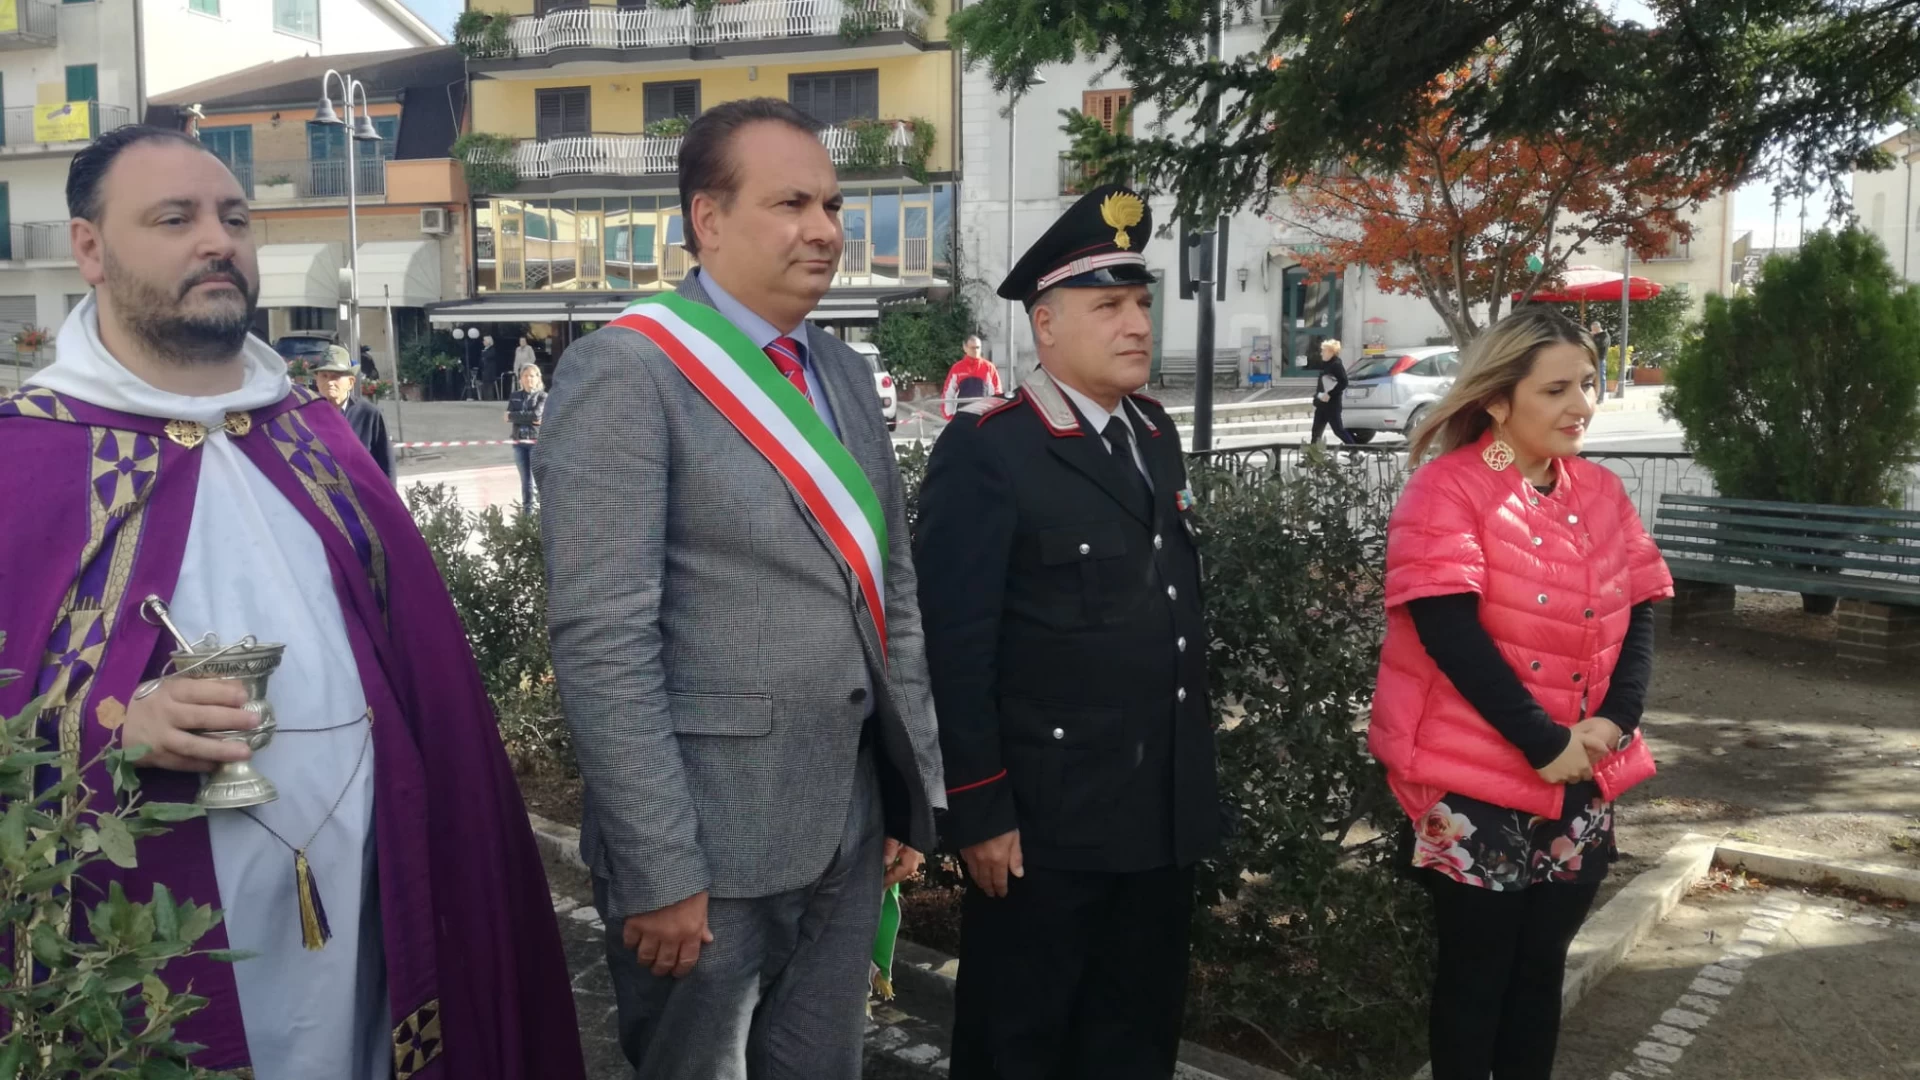 Colli a Volturno: dopo 11 anni lascia la stazione dei Carabinieri il maresciallo Perretta, trasferito a Venafro.